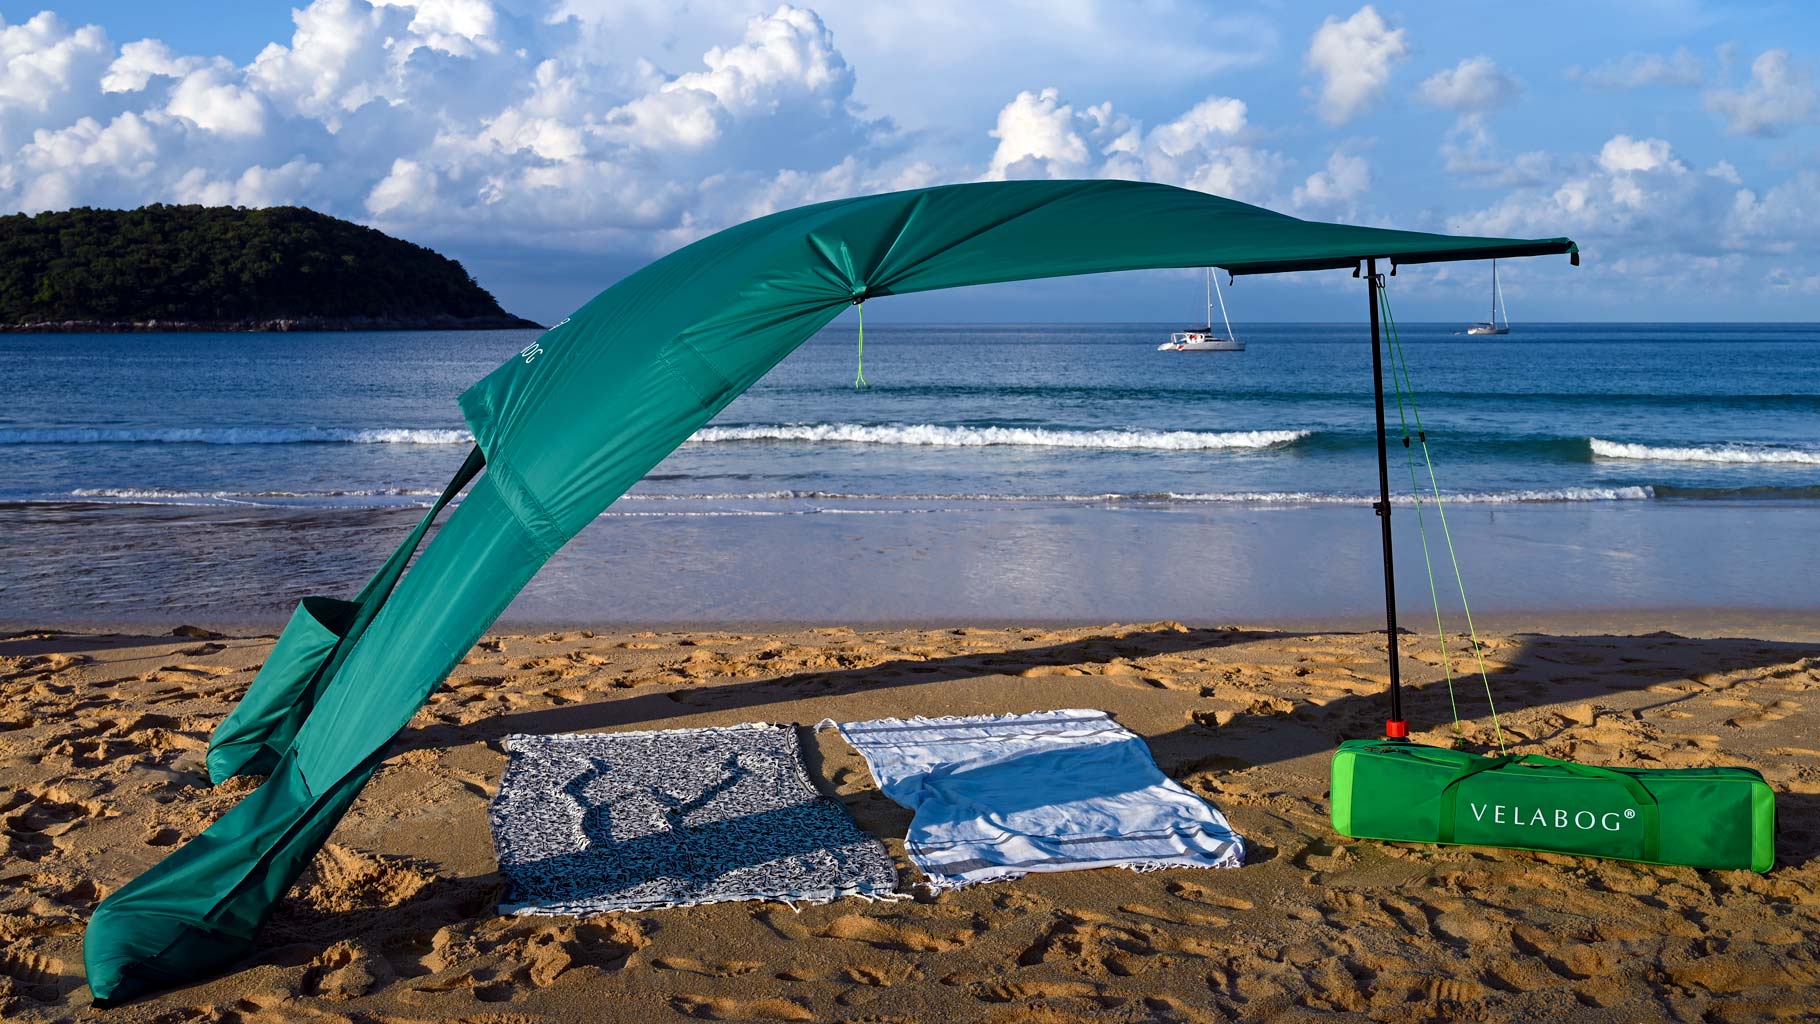 Vela da sole tenda spiaggia Velabog Breeze, verde, sulla spiaggia ventosa in Thailandia. Vela da sole, ombrellone e tenda da spiaggia in uno. Di alta qualità, durevole ed elegante. Miglior tettoia da spiaggia. Vista laterale.